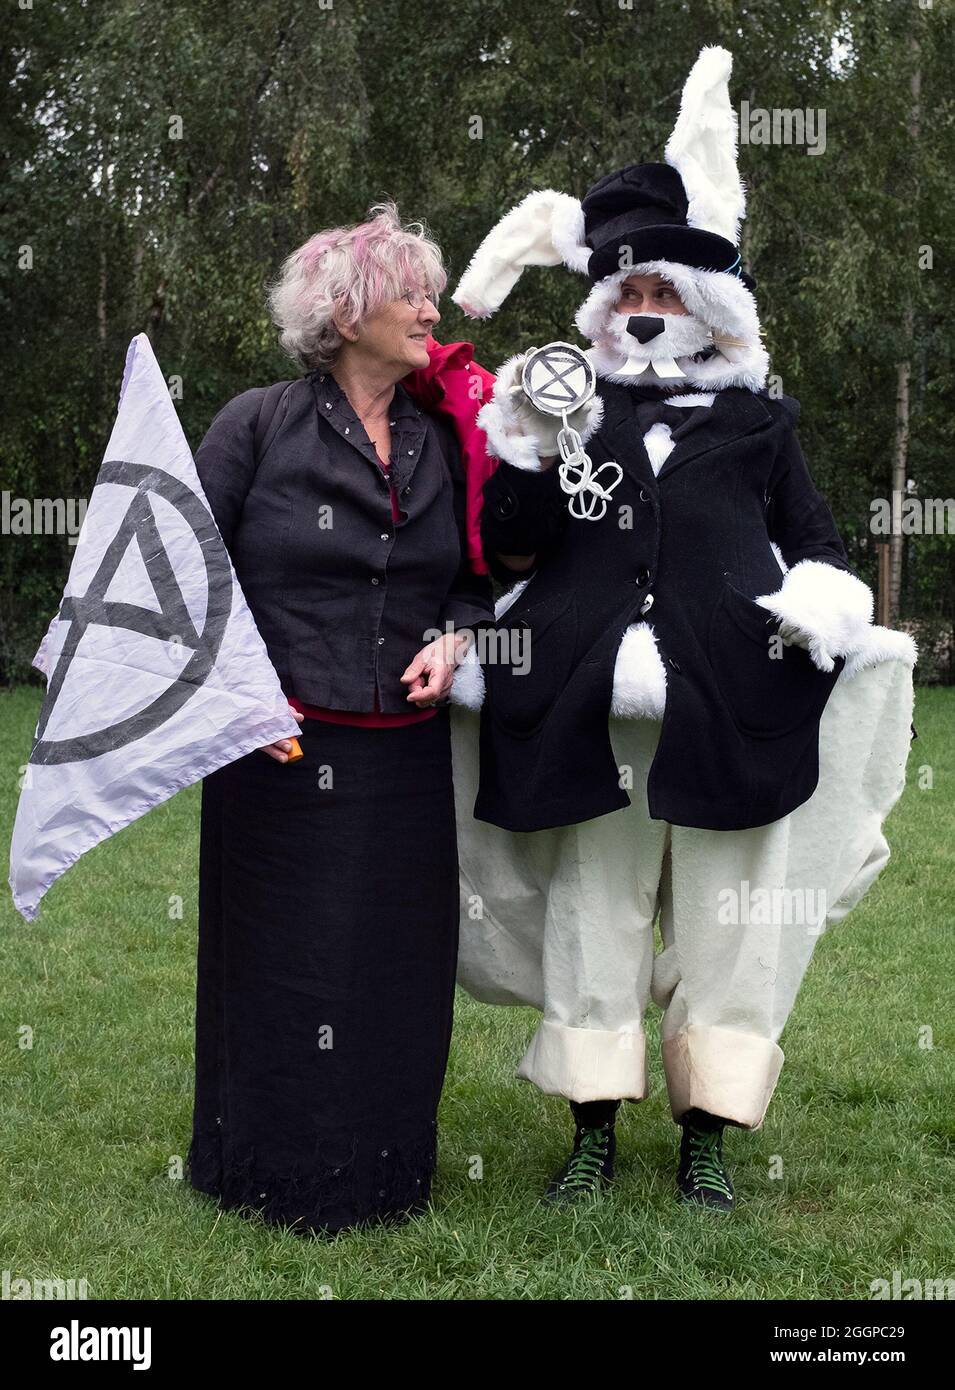 Zwei Demonstranten, einer davon als Kaninchen gekleidet, im Bild, als sich die Demonstranten vor dem Aussterben vor der Tate Modern versammeln Rebellions Massenfreistellungs-Protest am elften Tag ihrer Impossible Rebellion-Proteste in London, Großbritannien, am 2. September 2021. Stockfoto